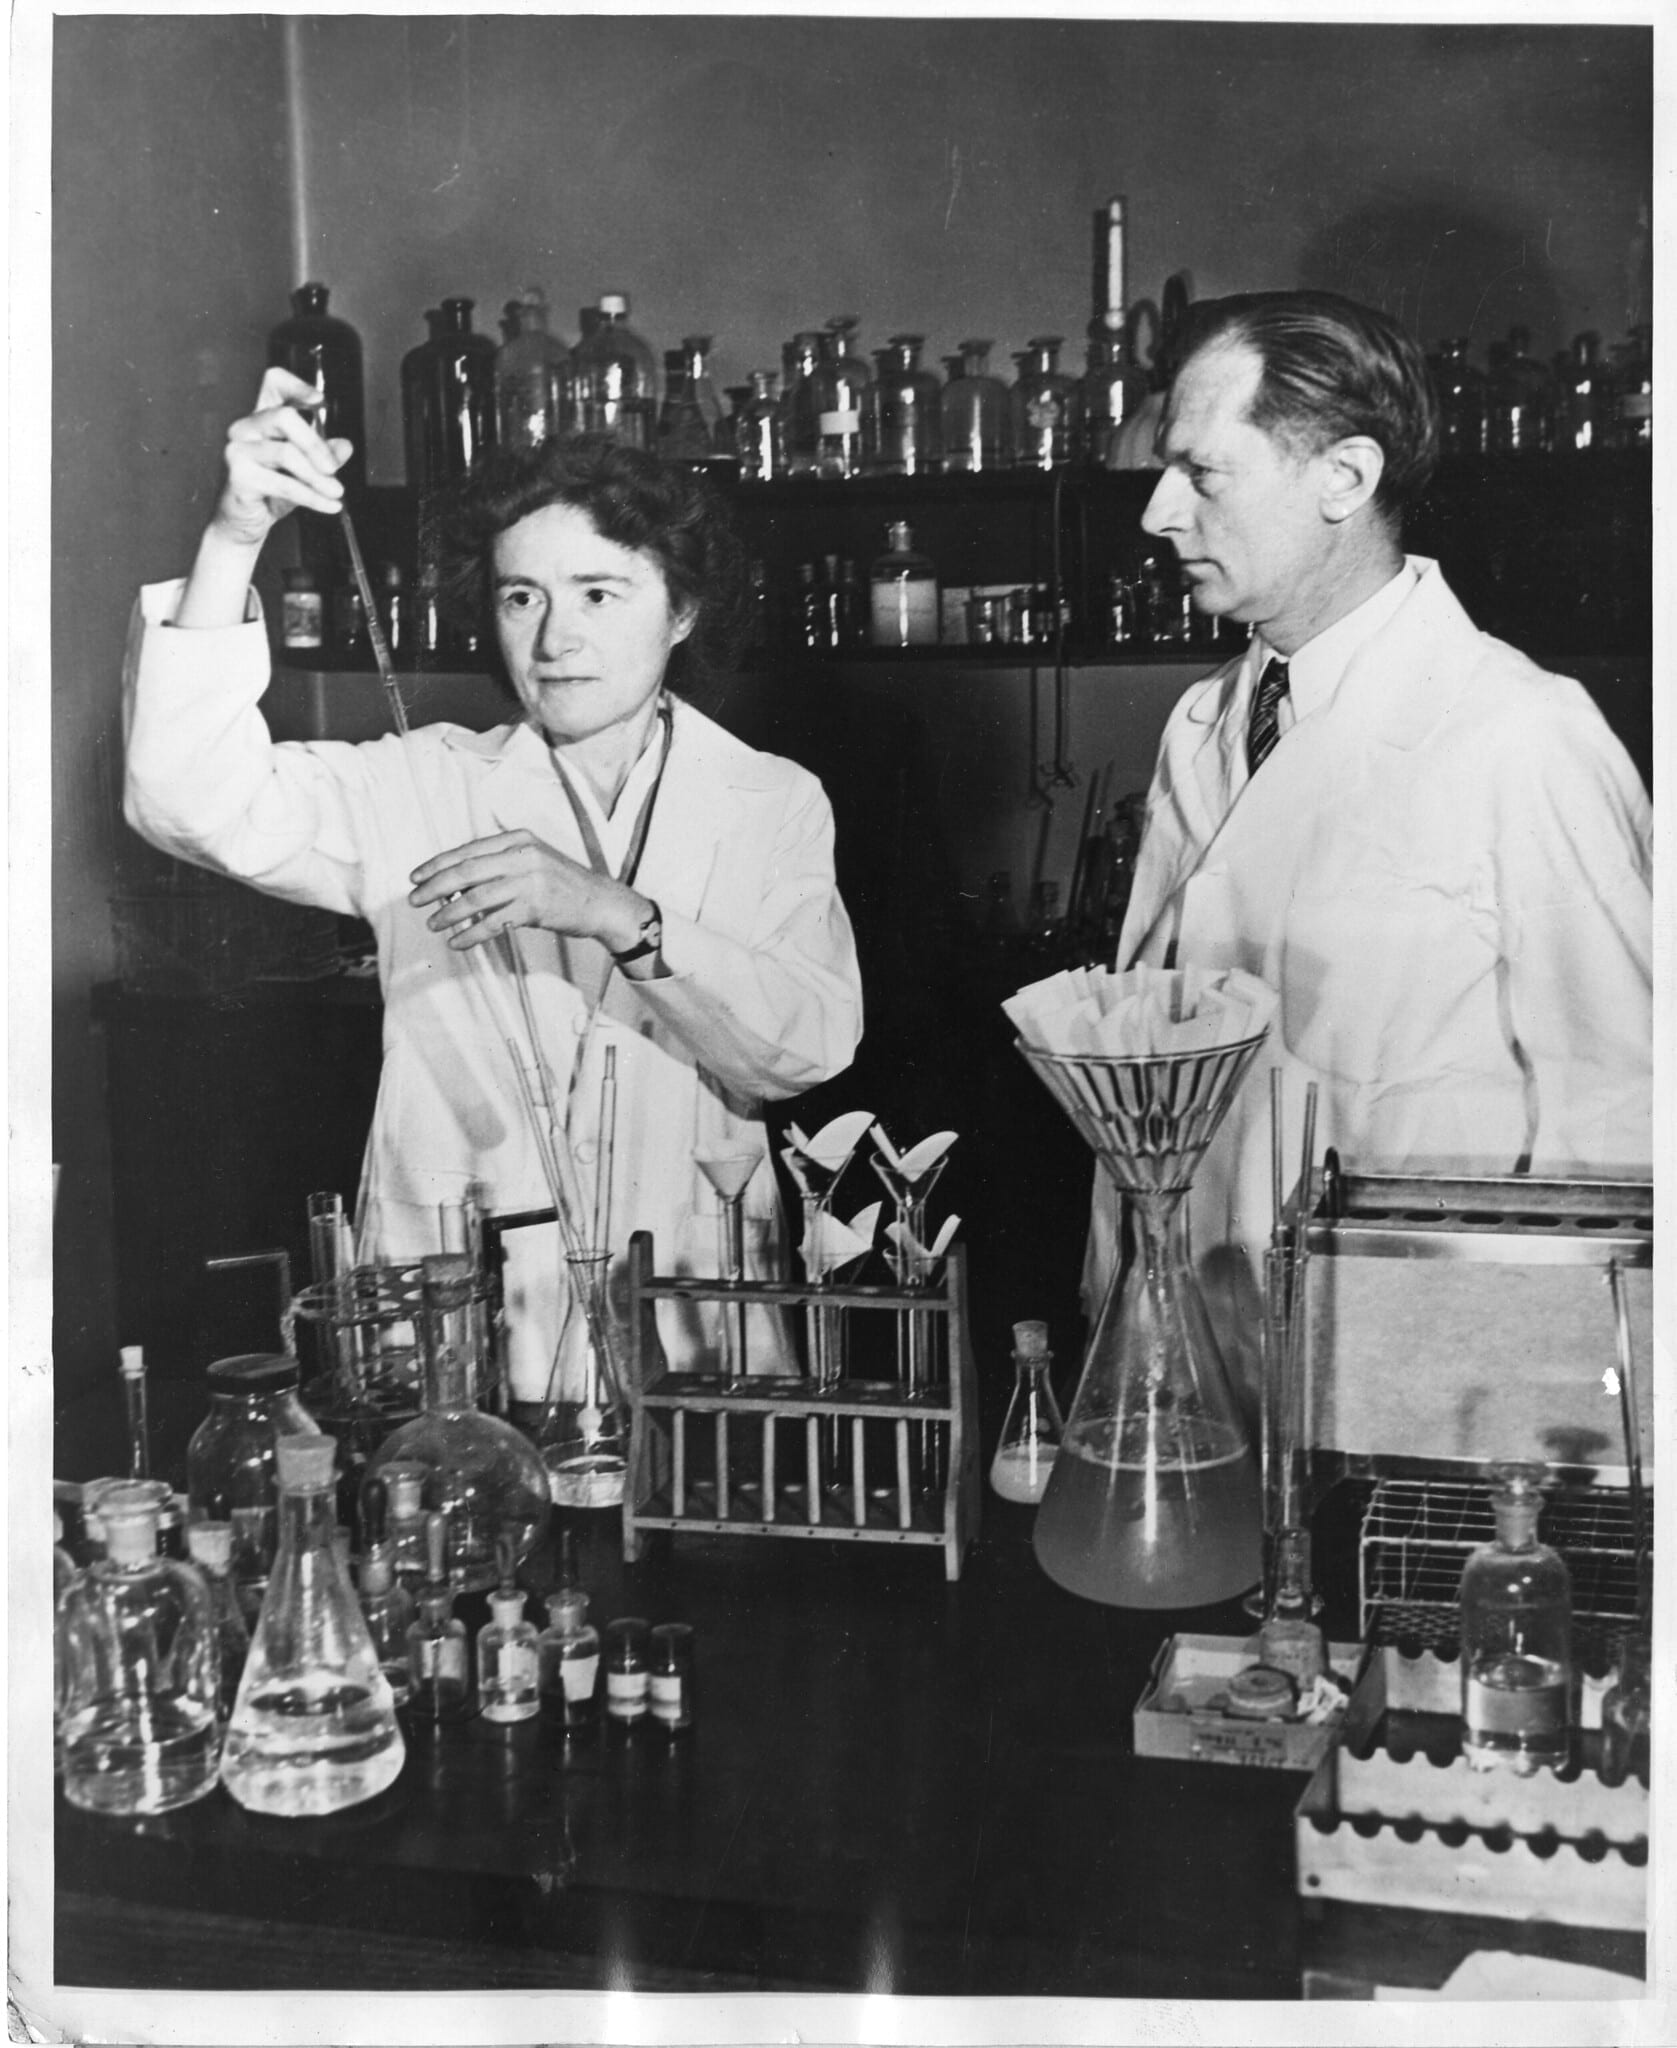 Gerty Cori and her husband Carl Cori in the lab